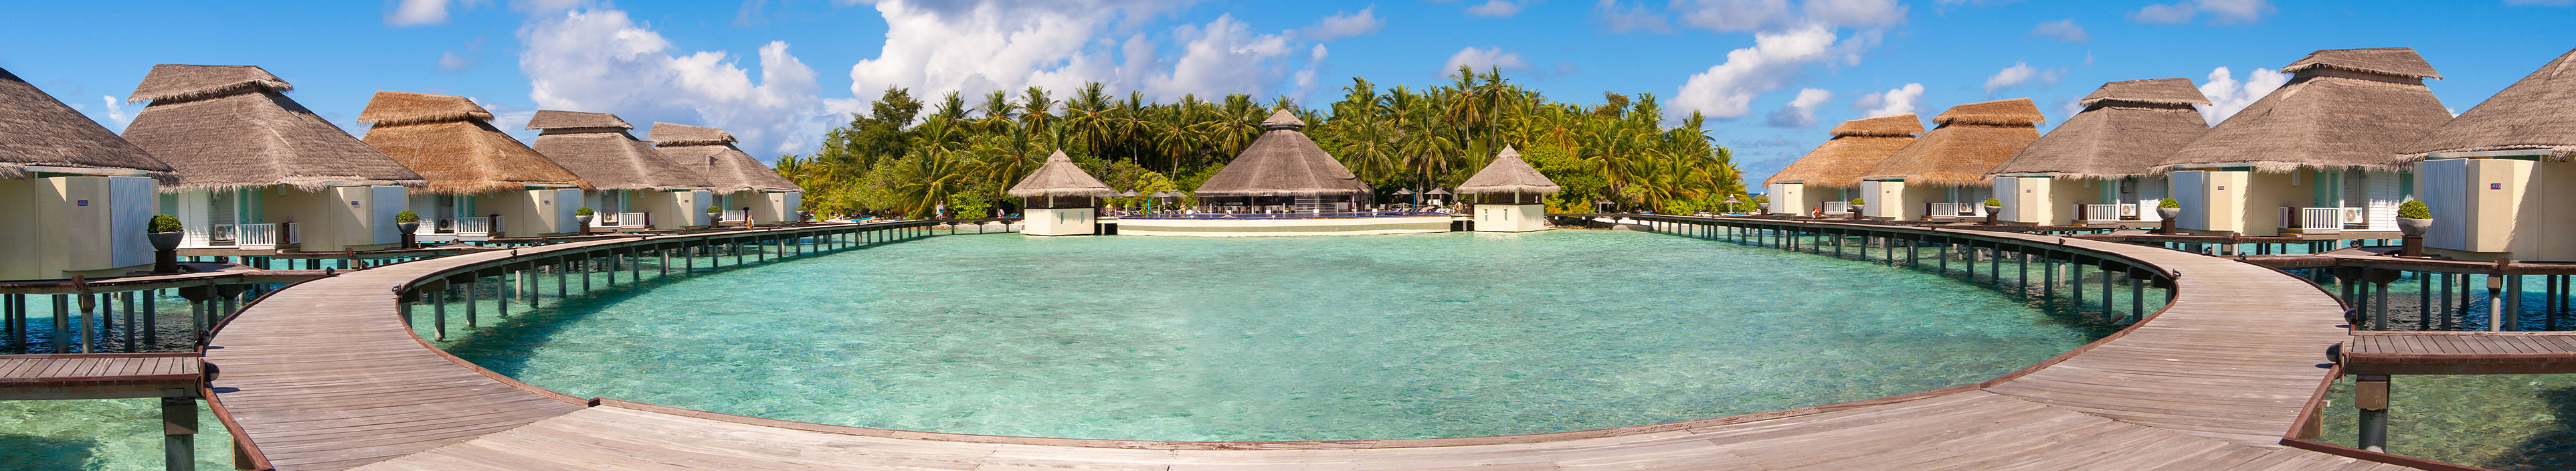 Hotel auf den Malediven, türkisblaues Meer, Palmen und Hütten am Strand